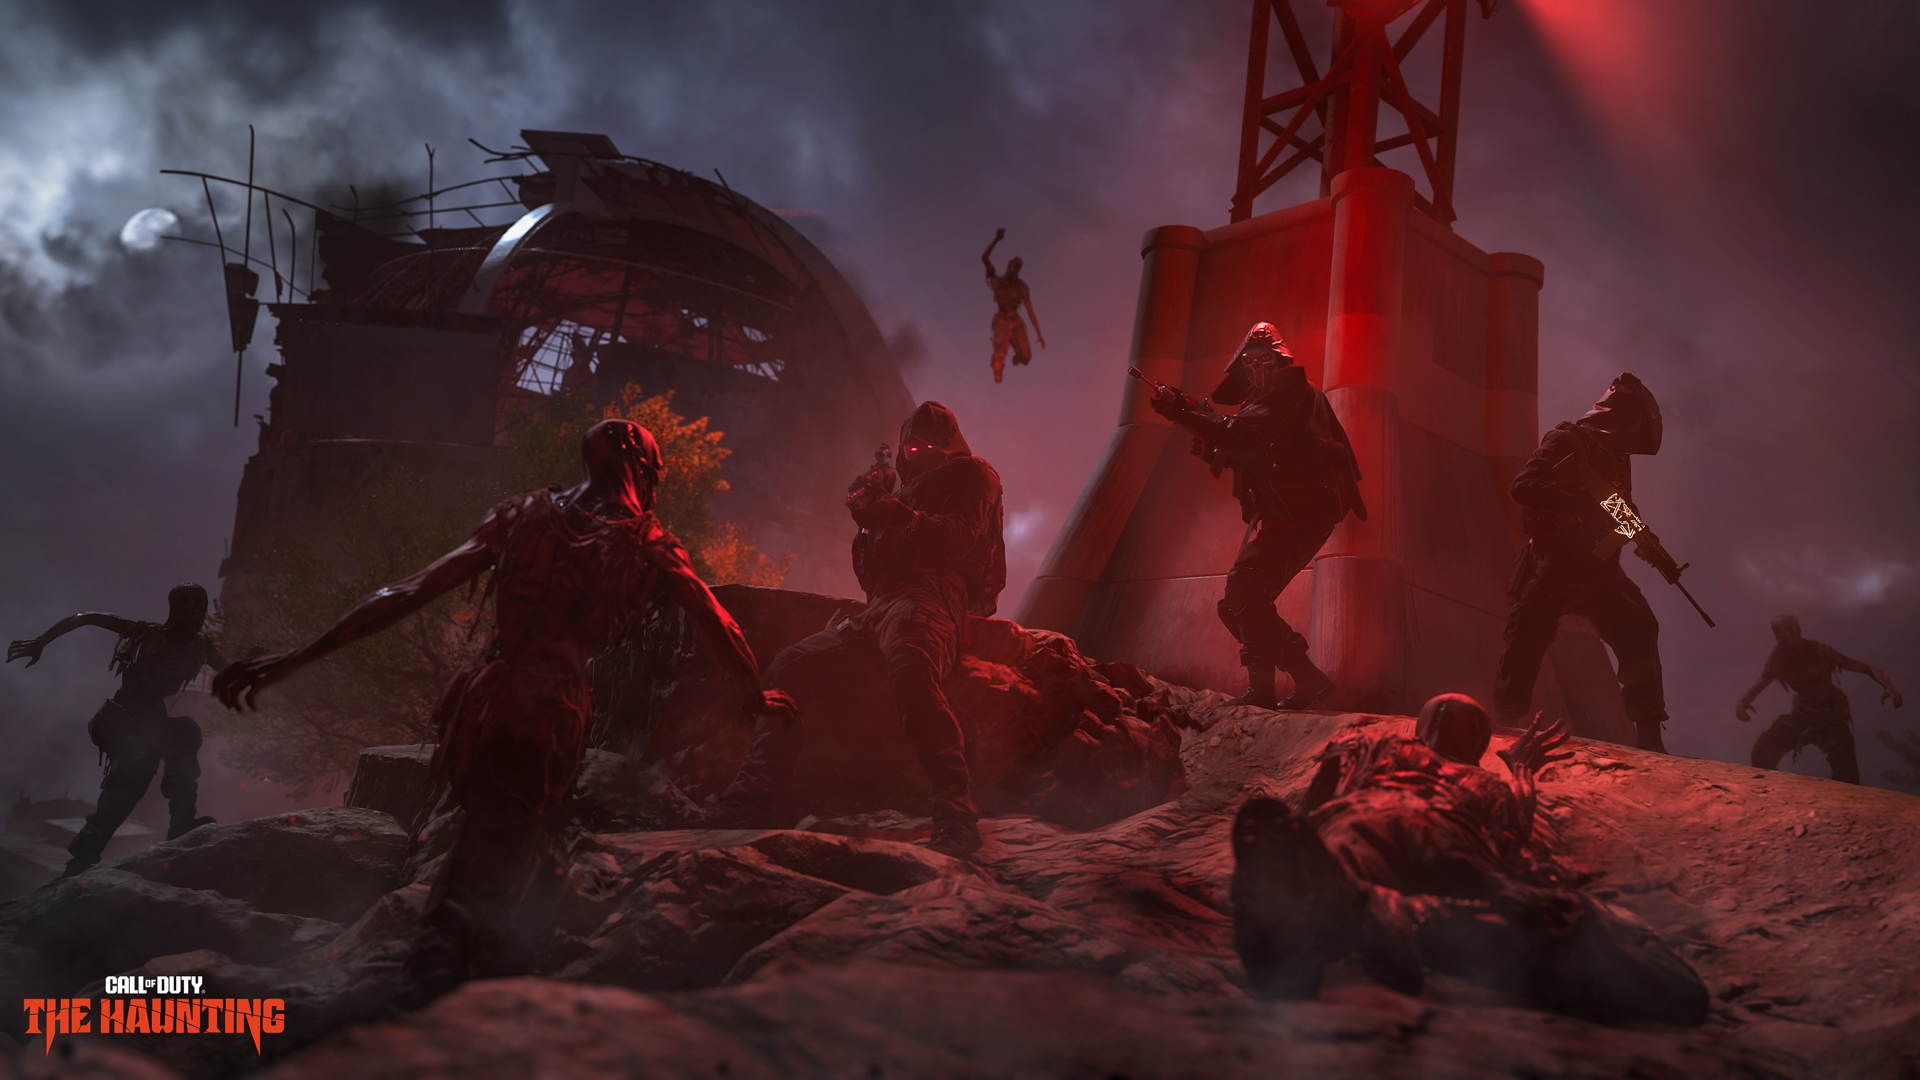 Rumors of Call of Duty: Infinite Warfare 2 shut down – is MW4 next